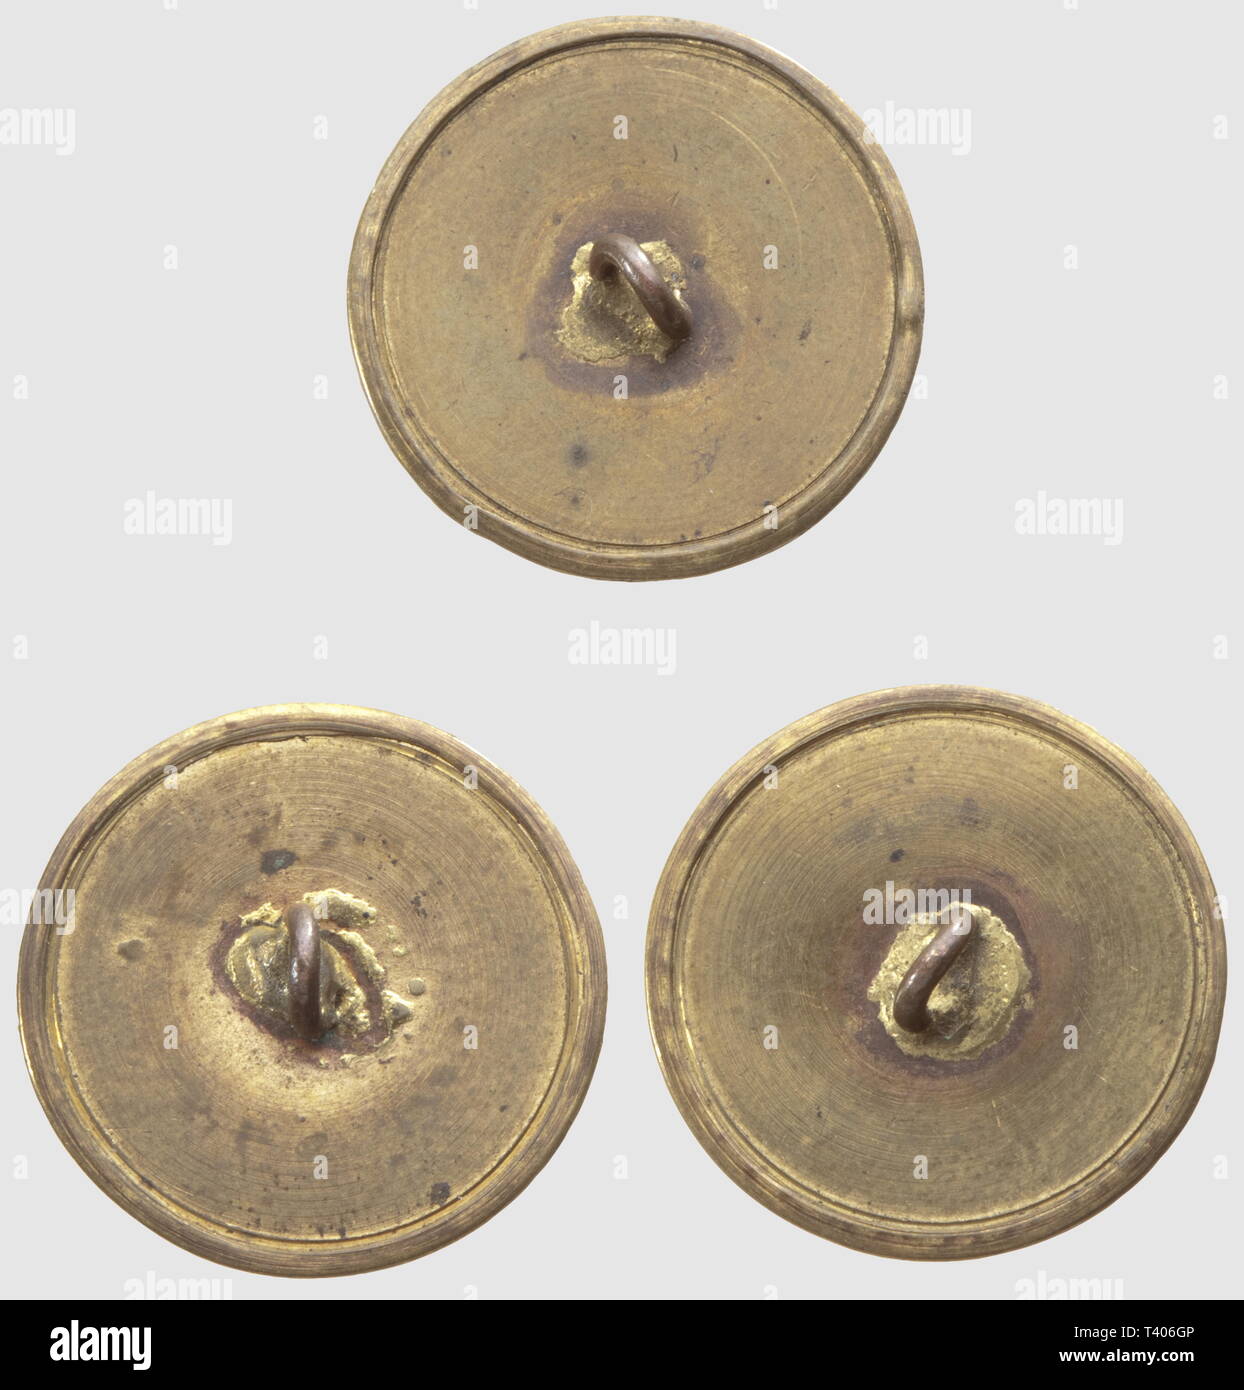 DIRECTOIRE-CONSULAT-EMPIRE 1795-1814, Trois boutons de la Maison de l'Empereur, (1er Empire). Modèle destiné à la tenue des chambellans, module plat serti, en cuivre doré. Très bon état. Diamètre 2,4 cm, Additional-Rights-Clearance-Info-Not-Available Stock Photo